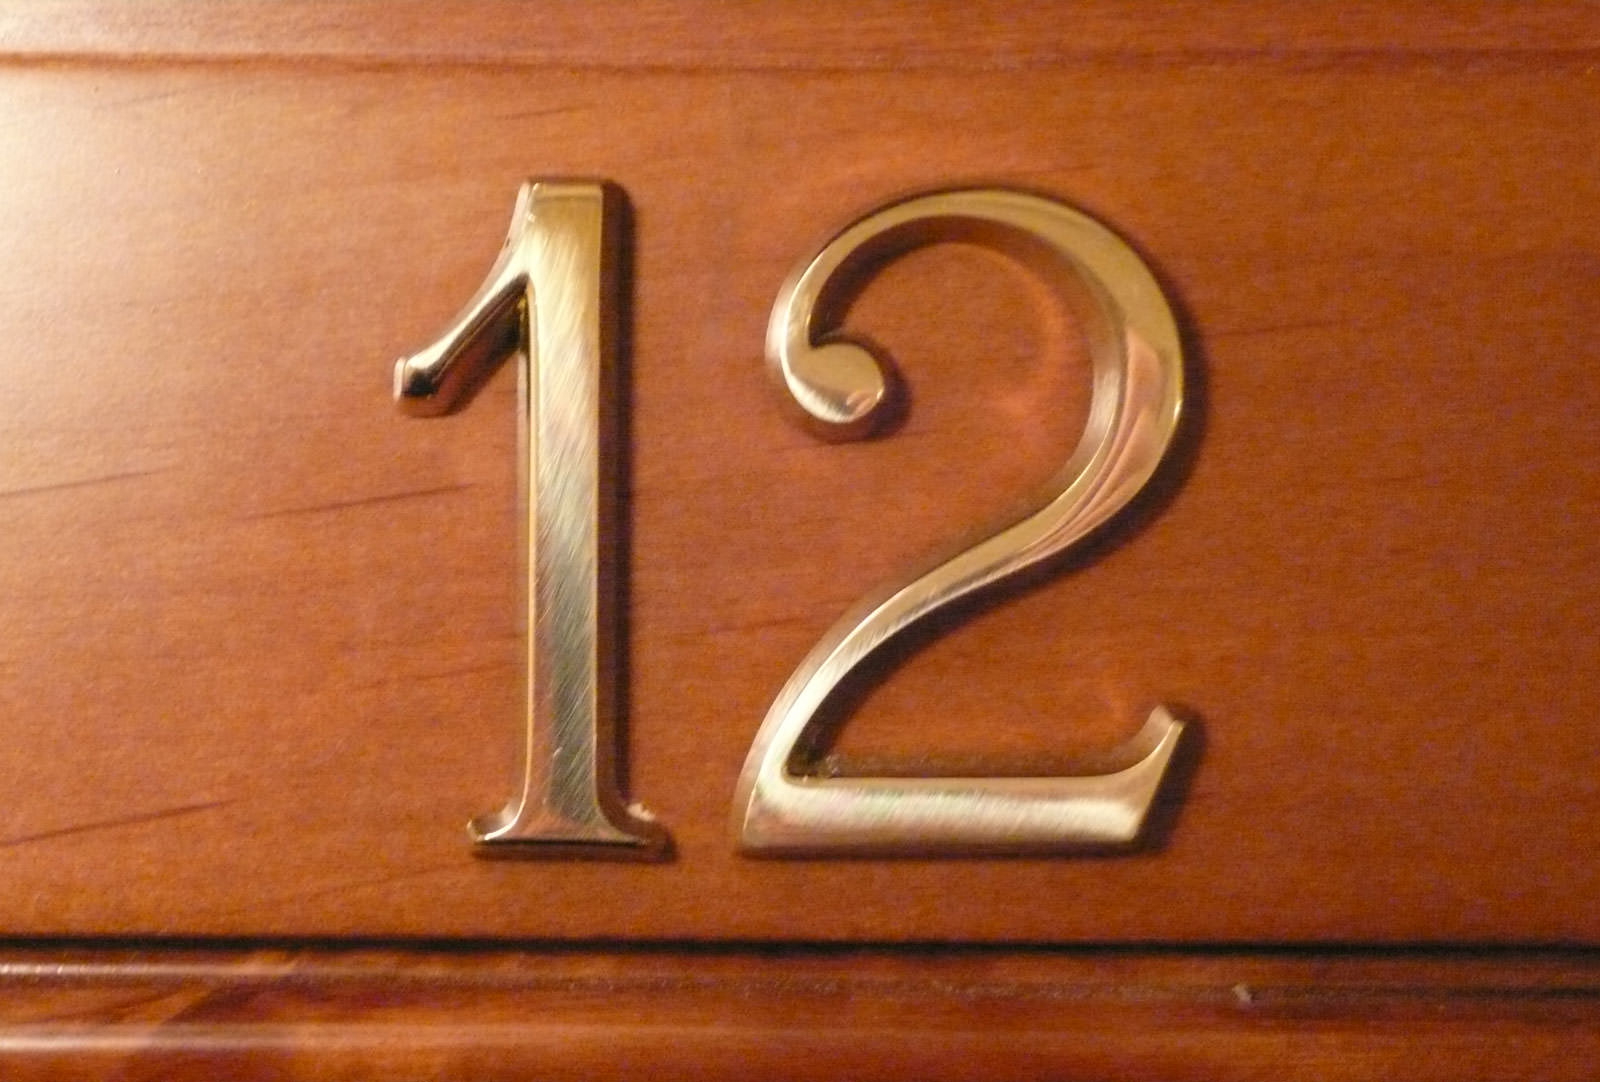 Цифры номера на двери квартиры. Цифры на дверь квартиры. Номер квартиры цифры на дверь. Цифры для номера квартиры на входную дверь. Номерок на дверь.